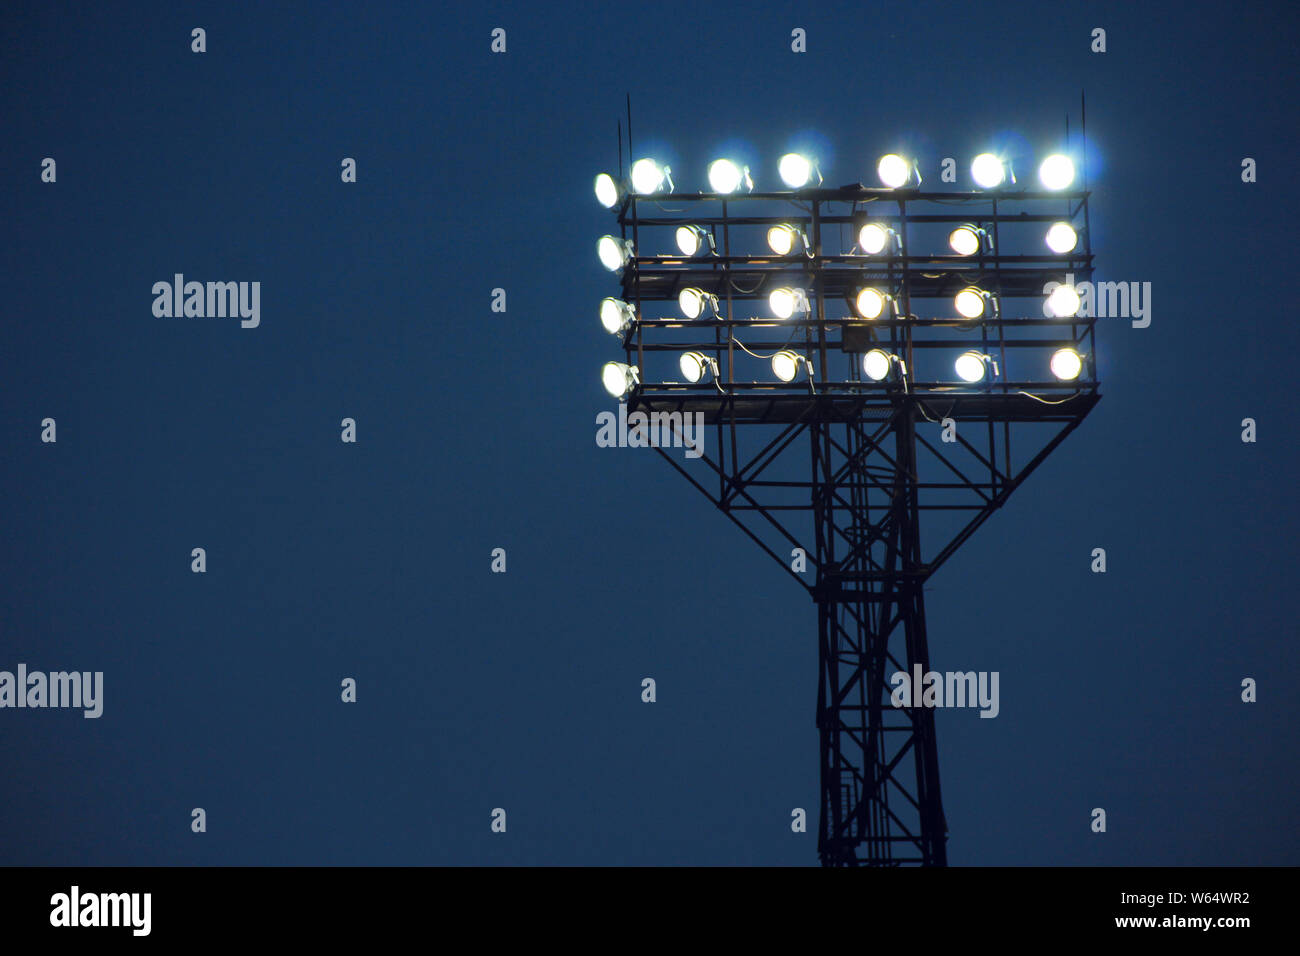 Los proyectores iluminan campo de fútbol durante el partido. Equipo de iluminación para estadios. Potente iluminación en stadium Foto de stock